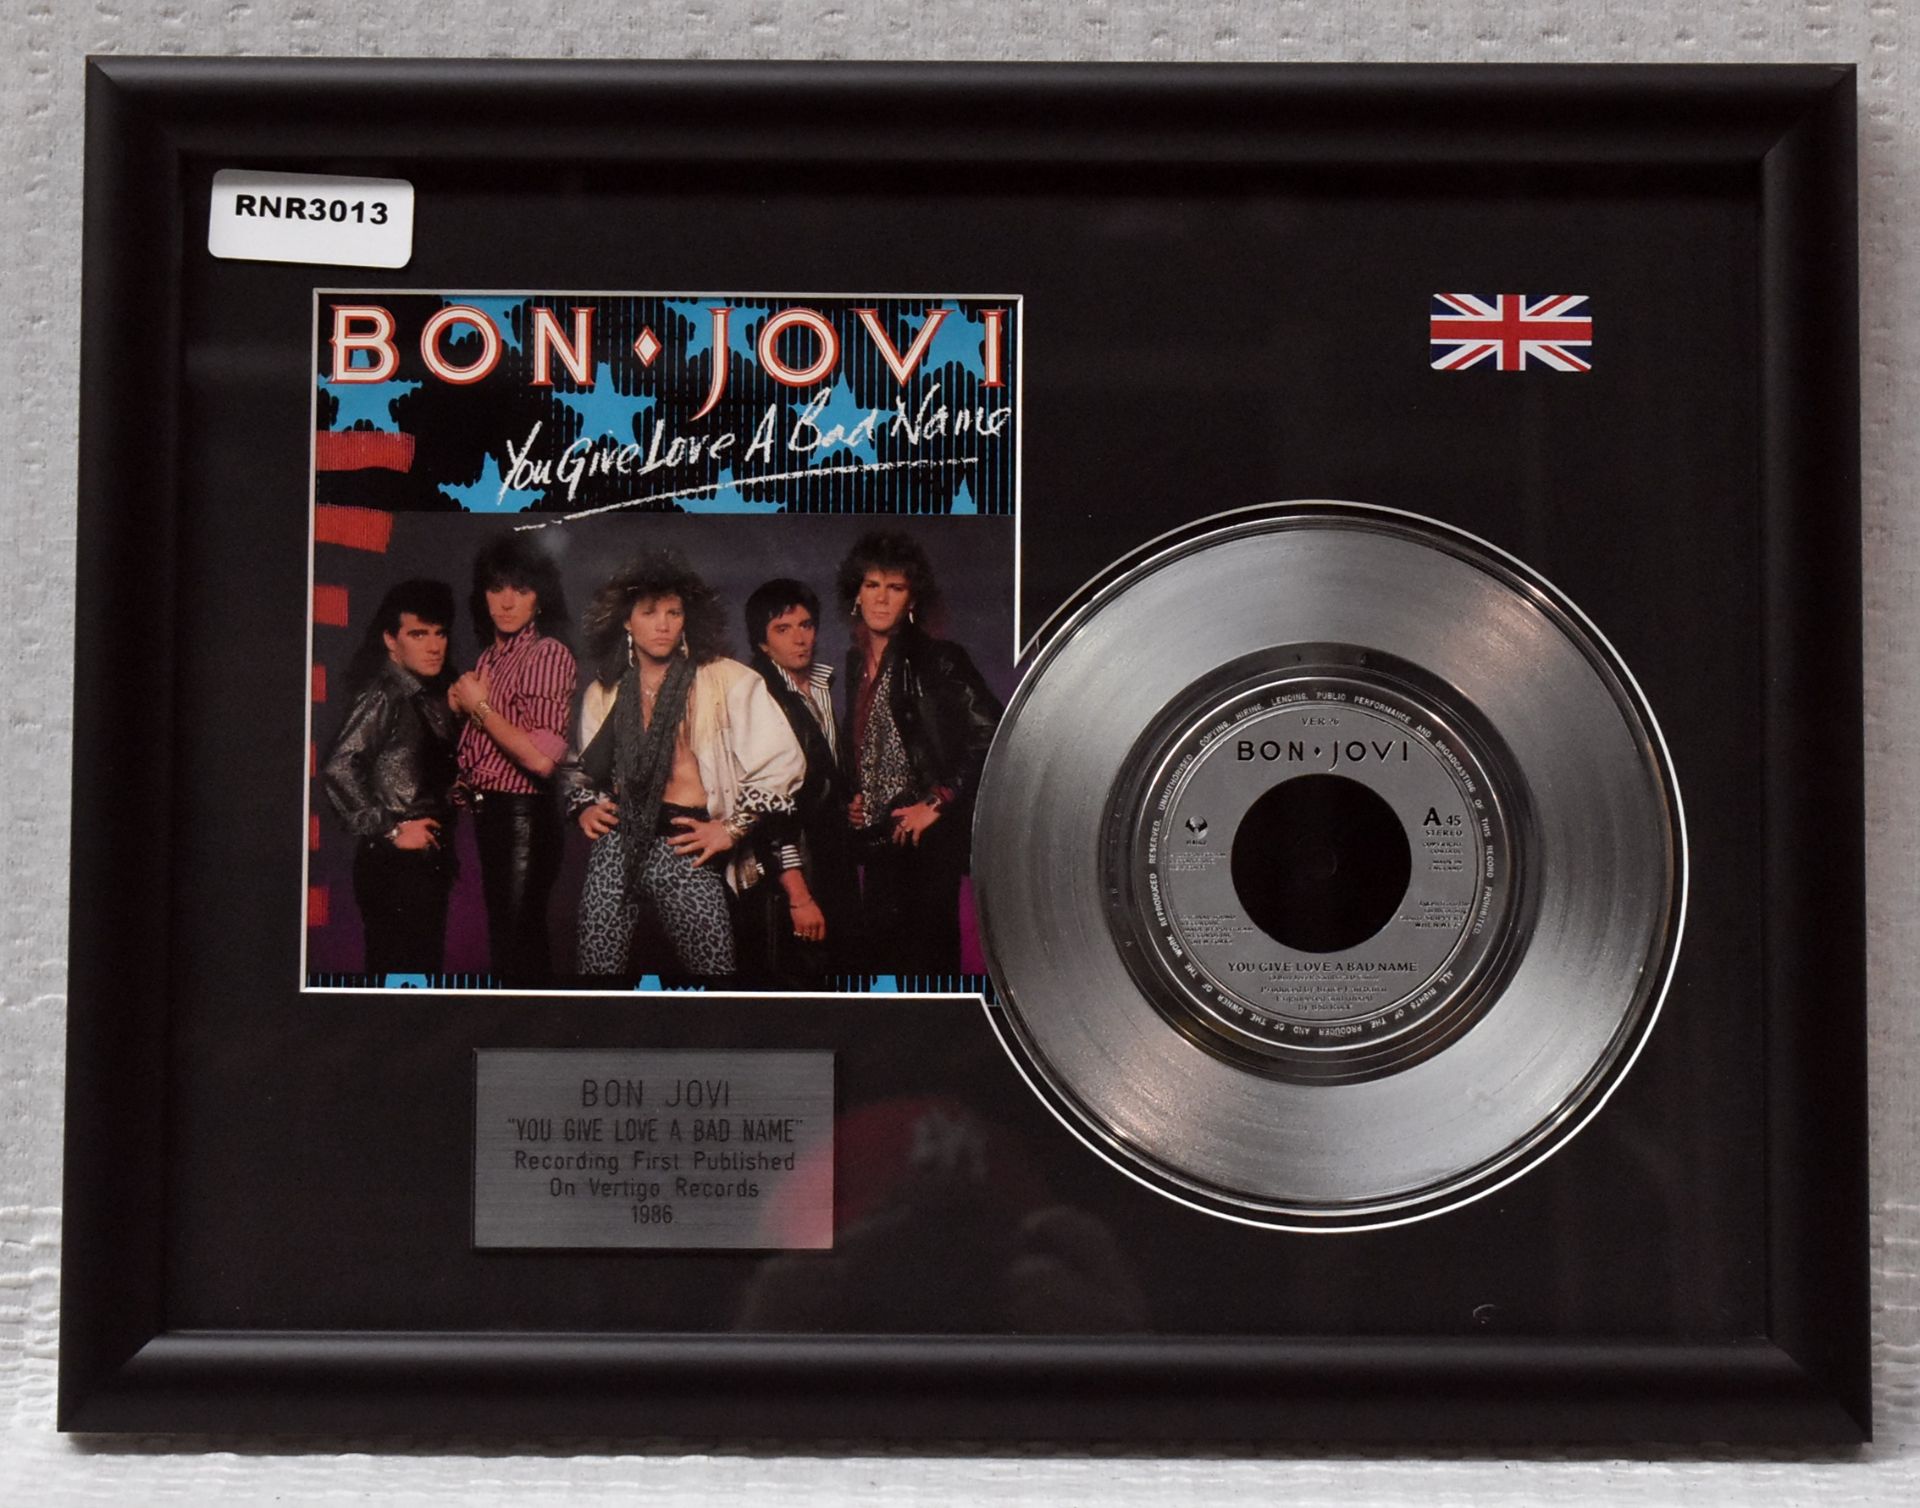 1 x BON JOVI - You Give Love A Bad Name On Vertigo Records Framed 7 Inch Vinyl